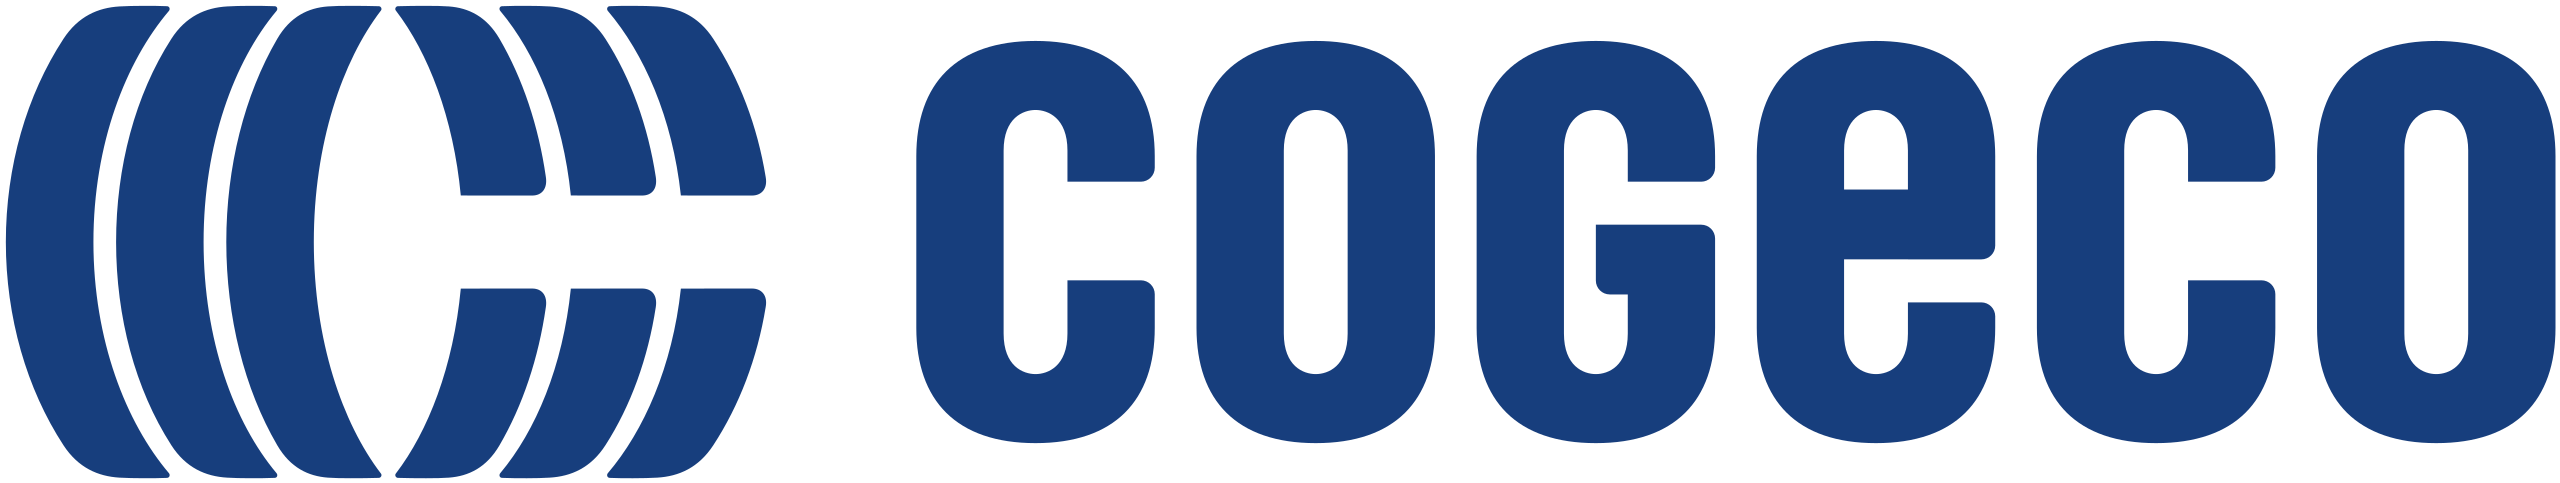 Cogeco_logo.svg